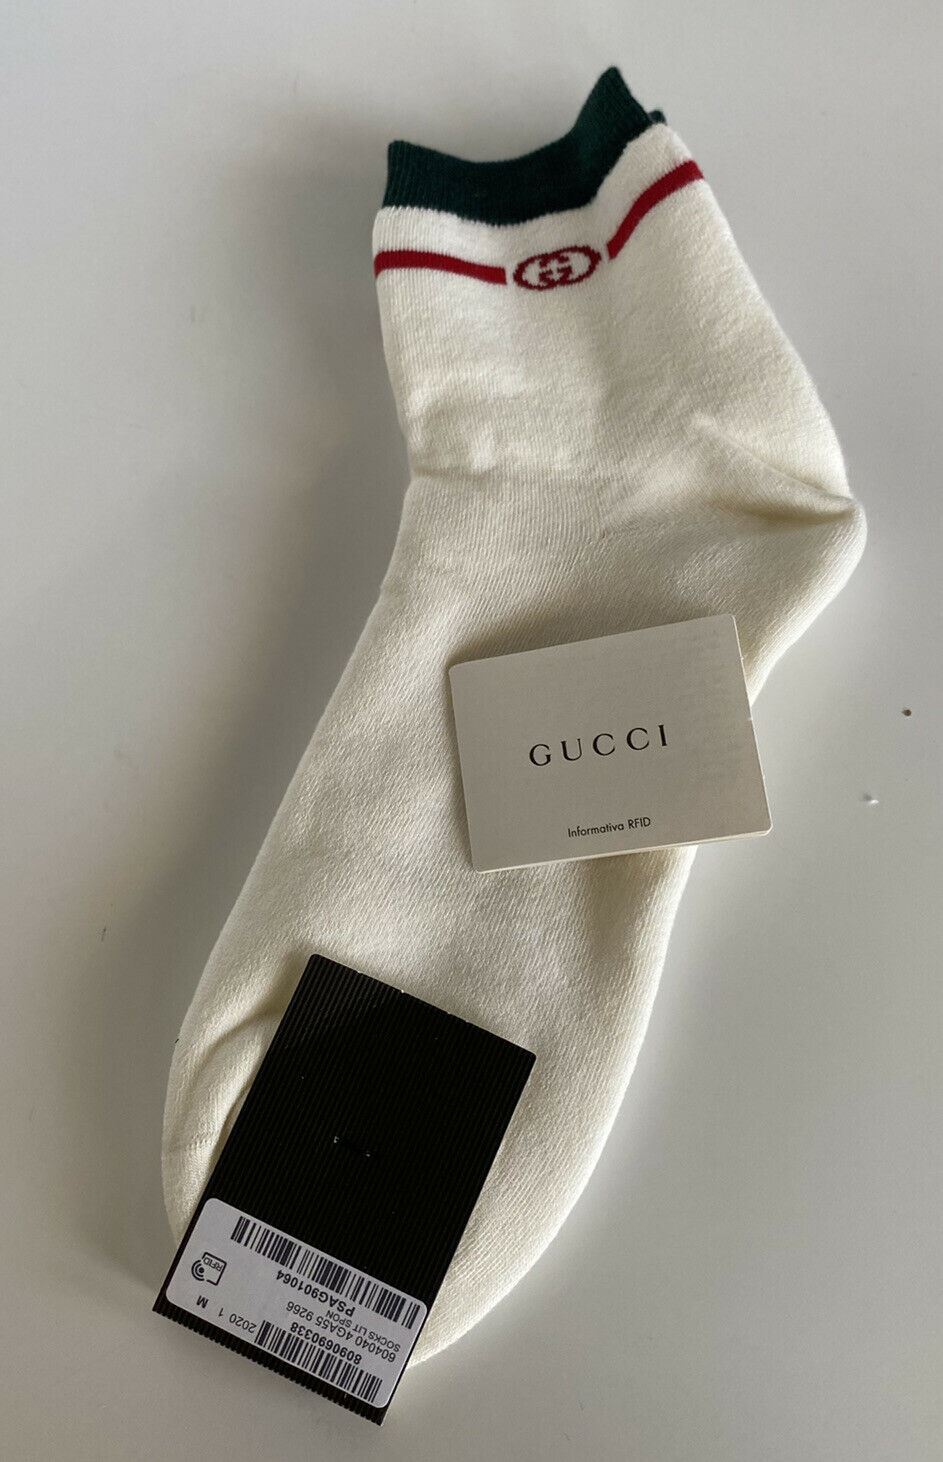 Носки NWT Gucci Lit Spon белые/зеленые/красные ML (24-26 см) производство Италия 604040 